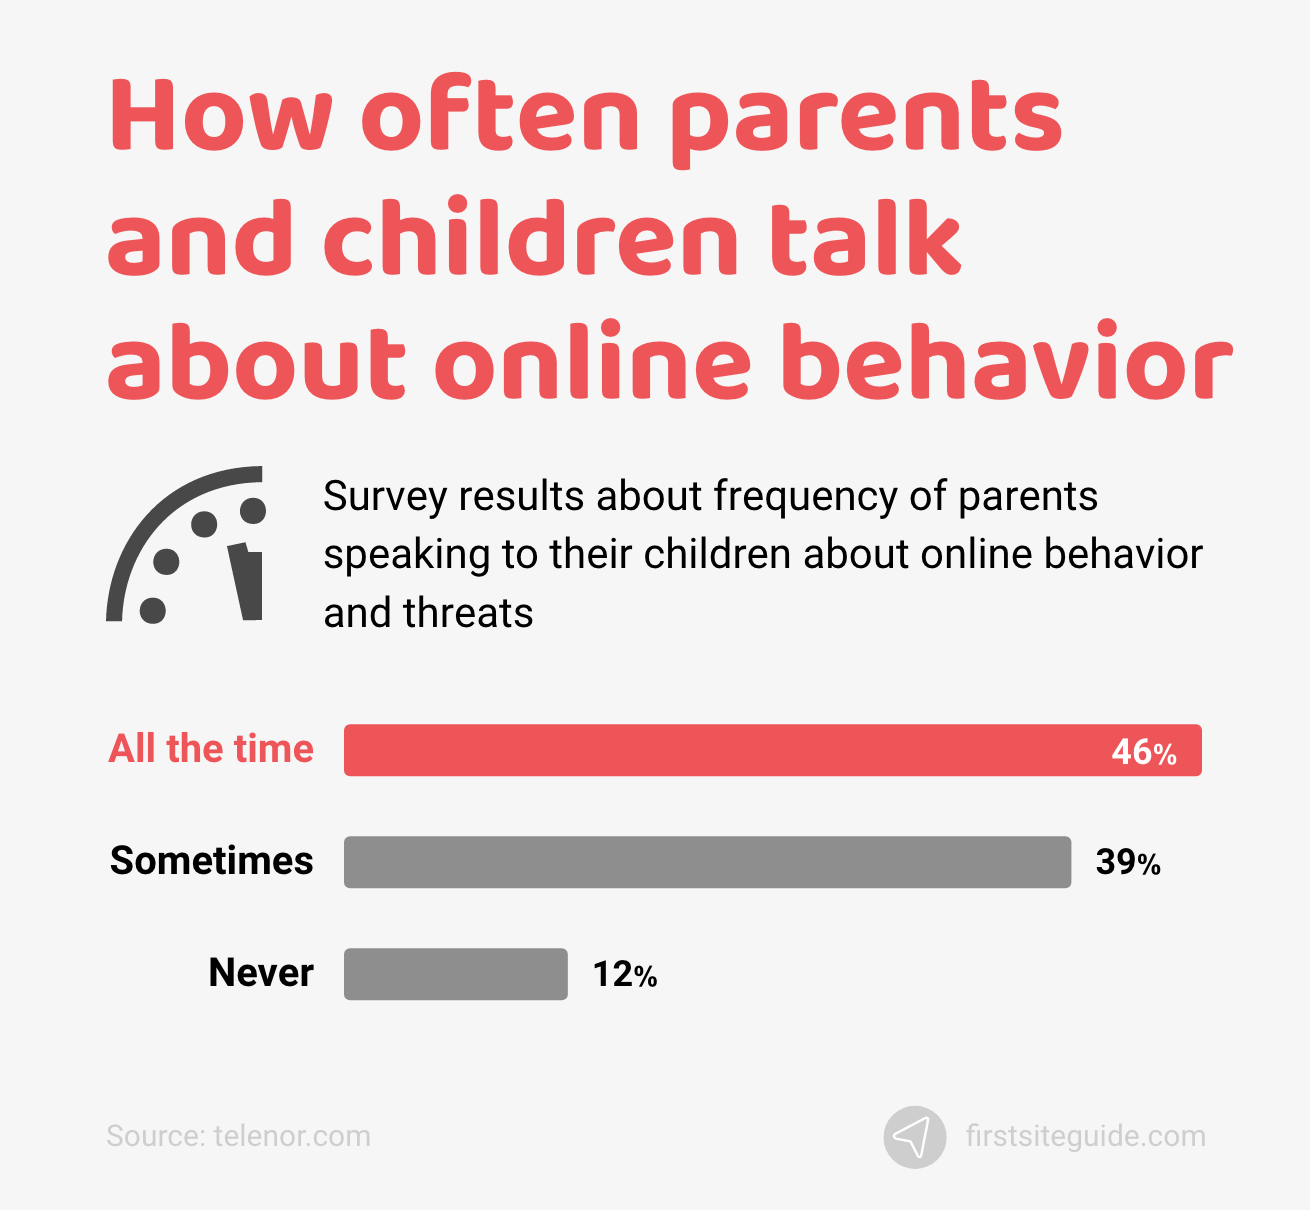 Seberapa sering orang tua dan anak berbicara tentang perilaku online